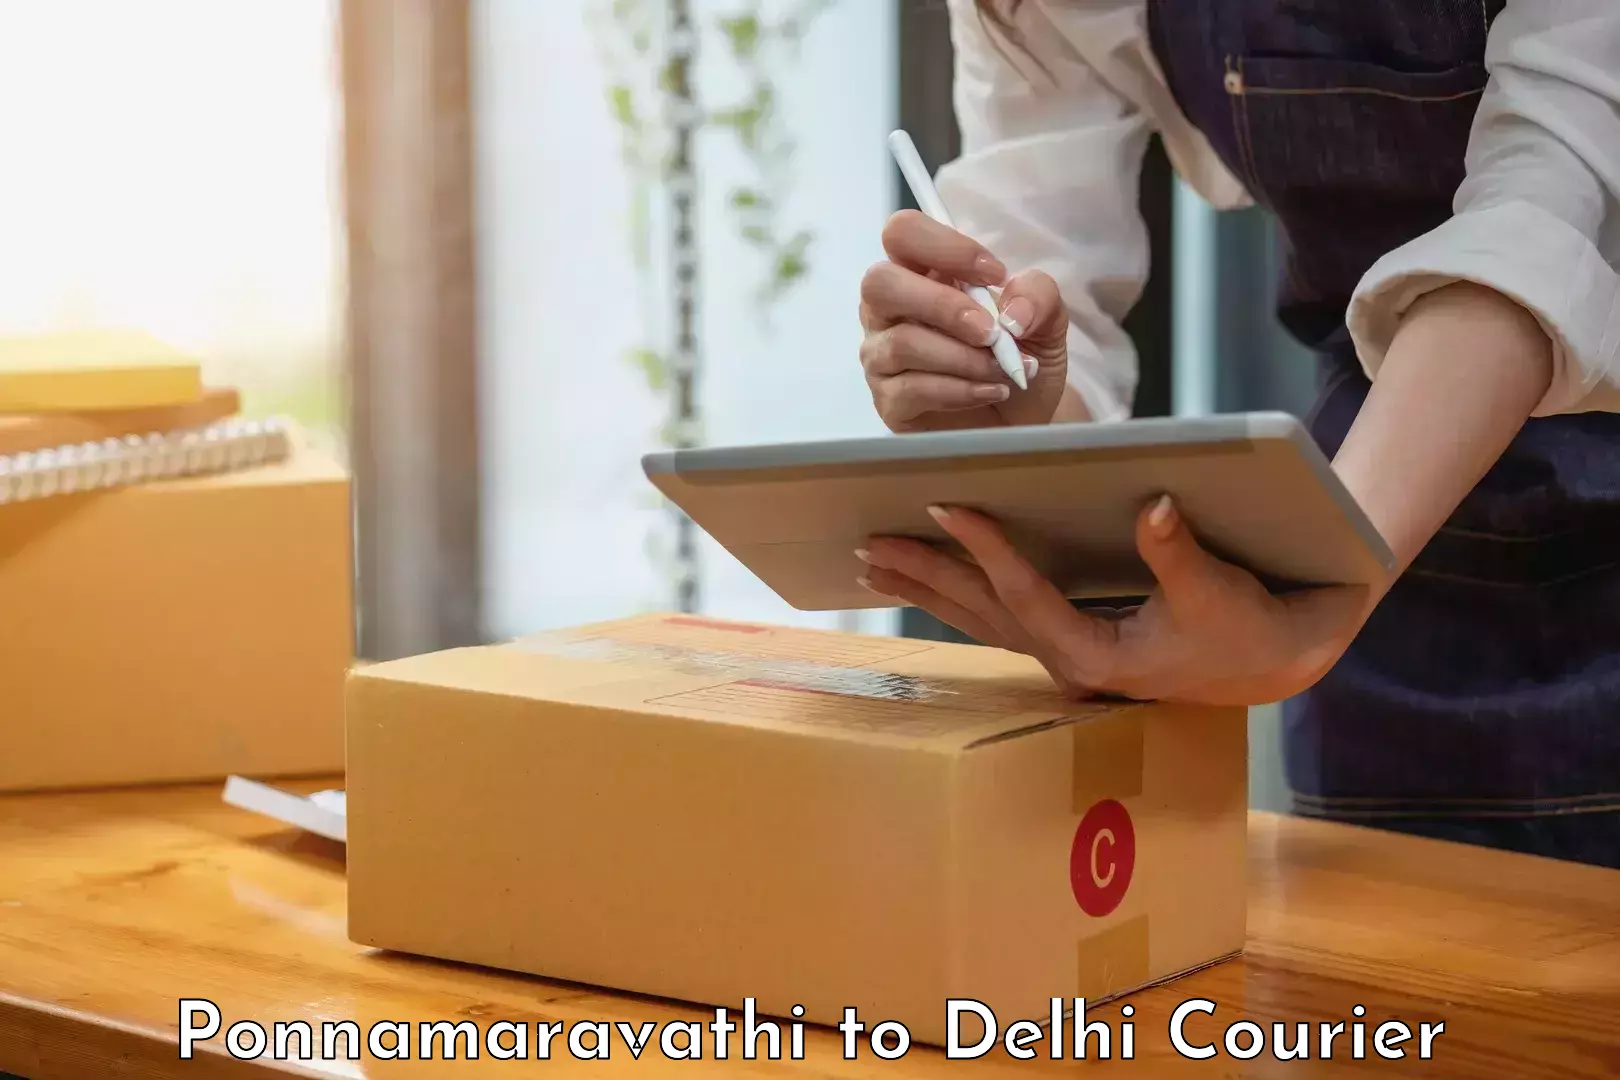 Speedy delivery service Ponnamaravathi to Guru Gobind Singh Indraprastha University New Delhi